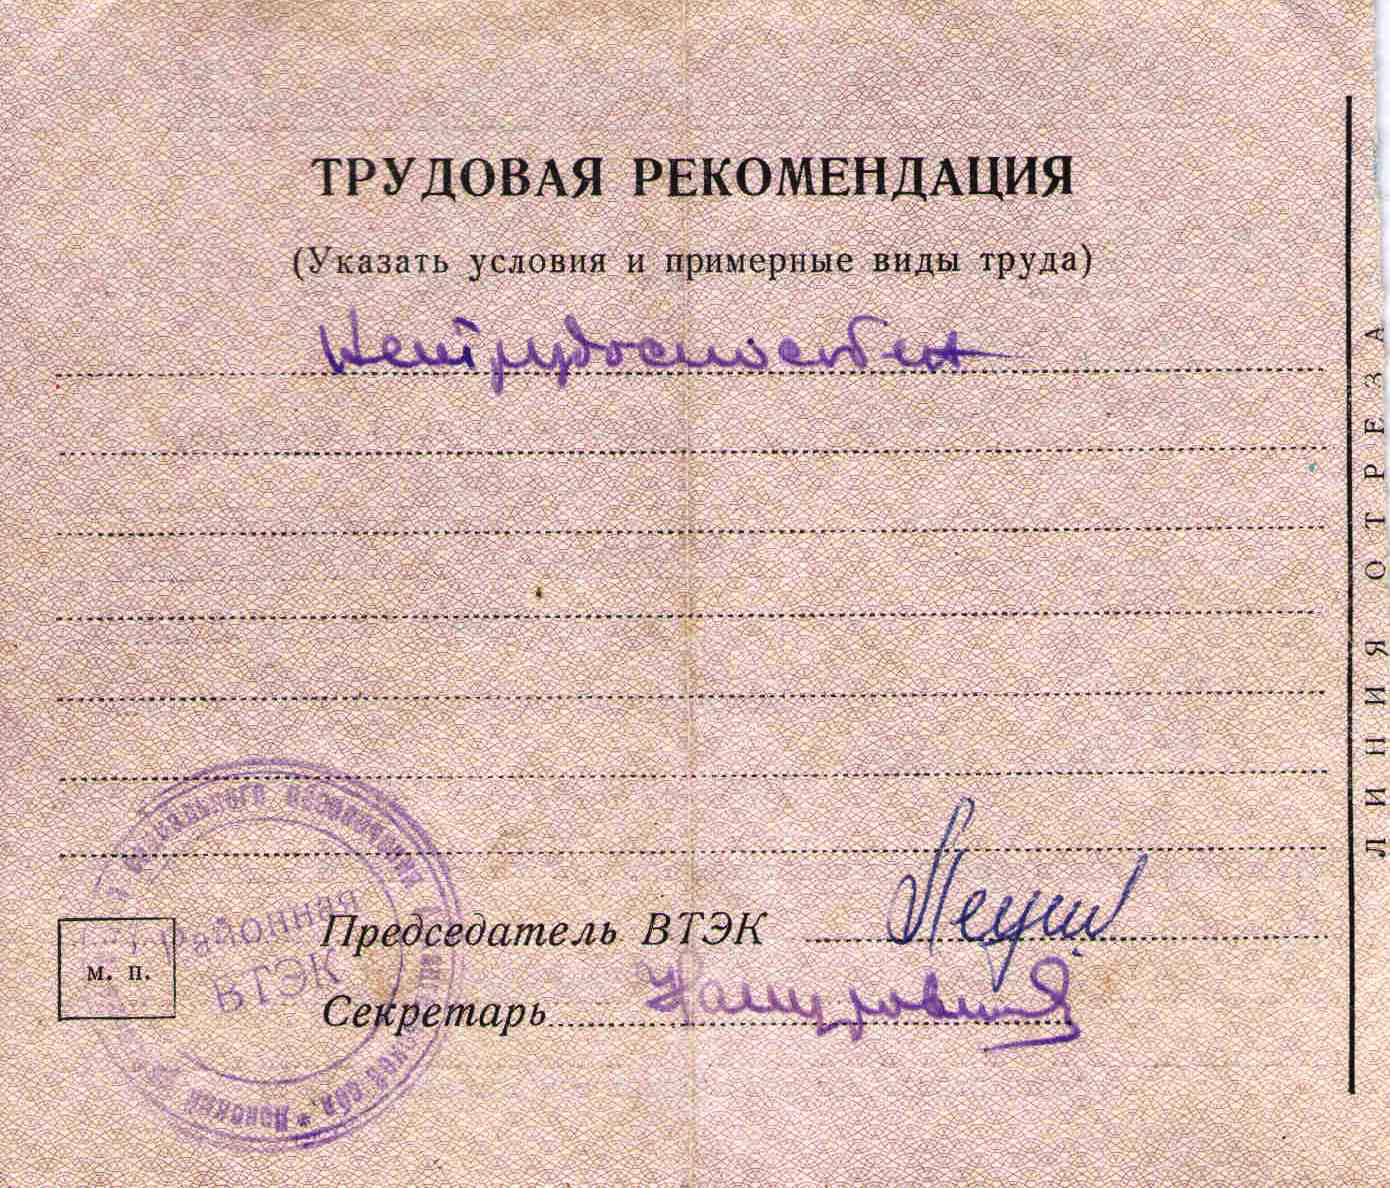 58. Справка Врачебно-трудовой экспертной комиссии ВТЭК, 1969